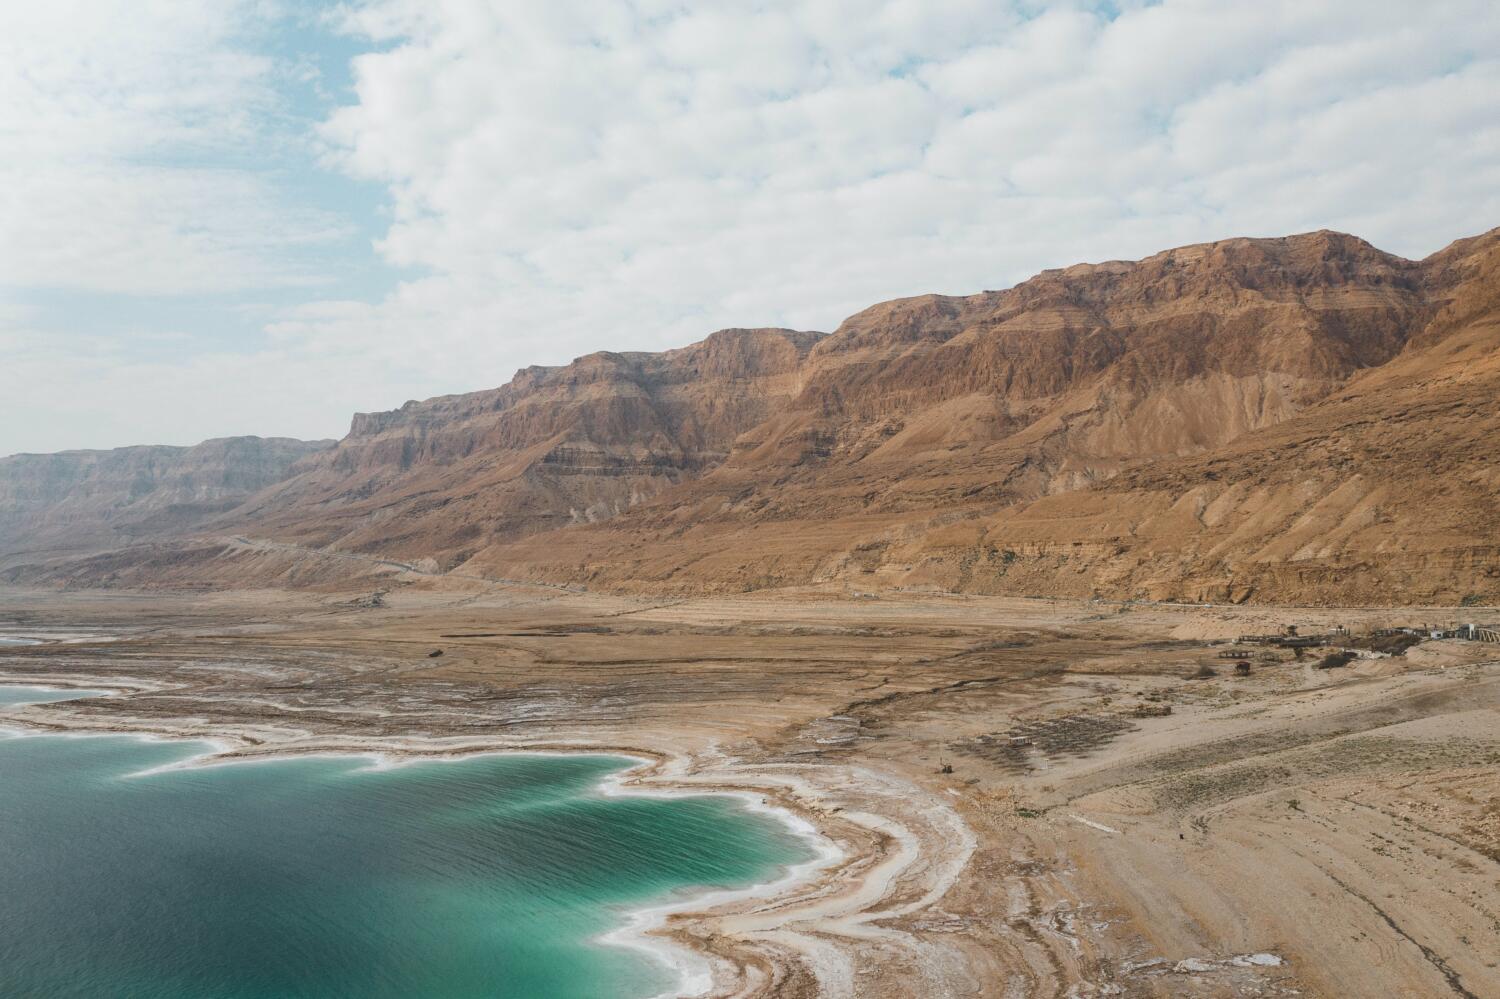 The Dead Sea in Jerusalem